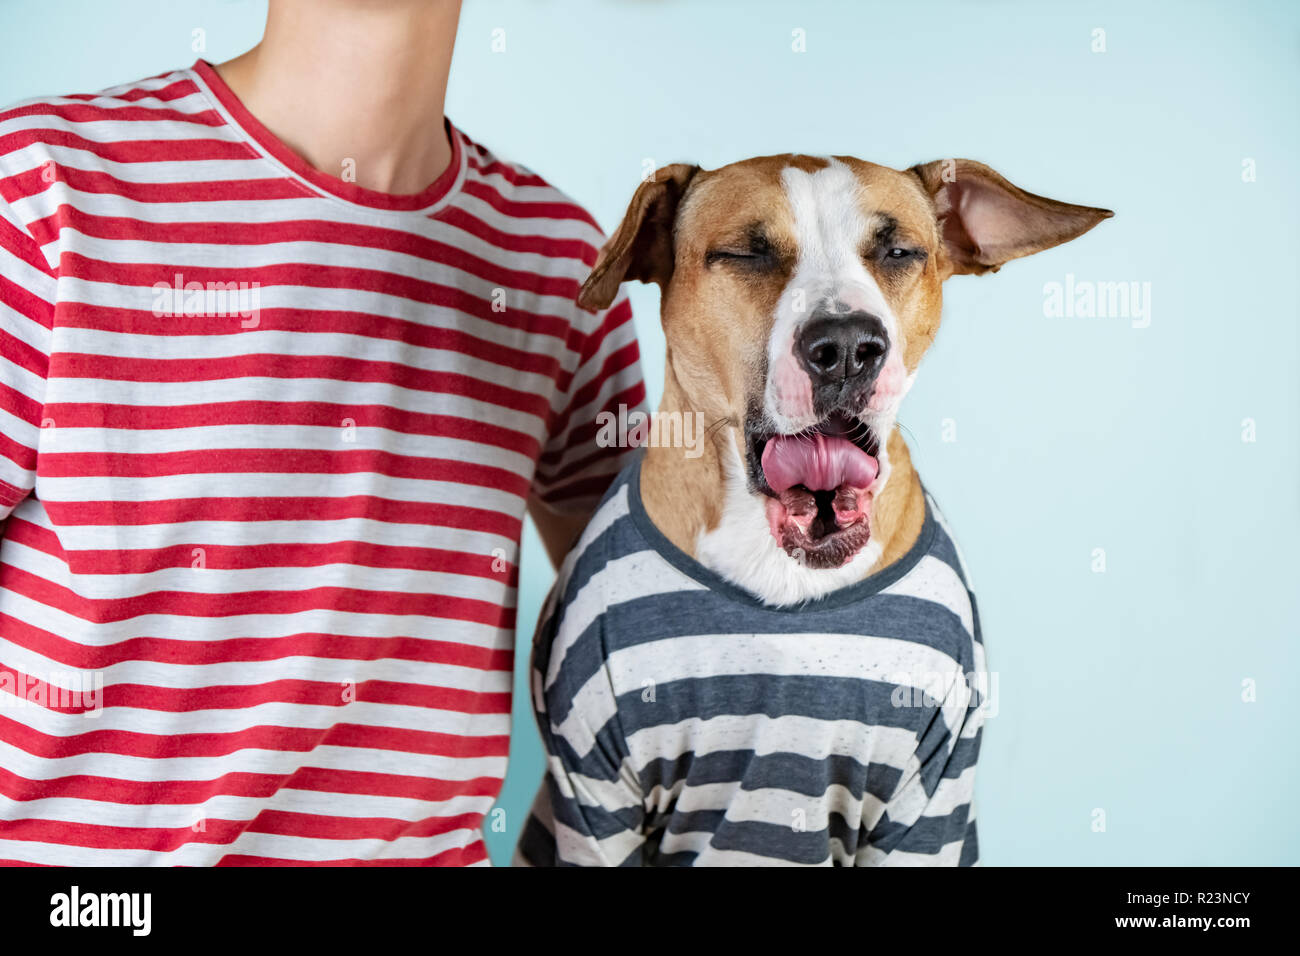 Funny sbadigli cane e proprietario in vestiti simili. Assonnato mattina idea: puppy e umano nella stessa t-shirt in sfondo per studio Foto Stock